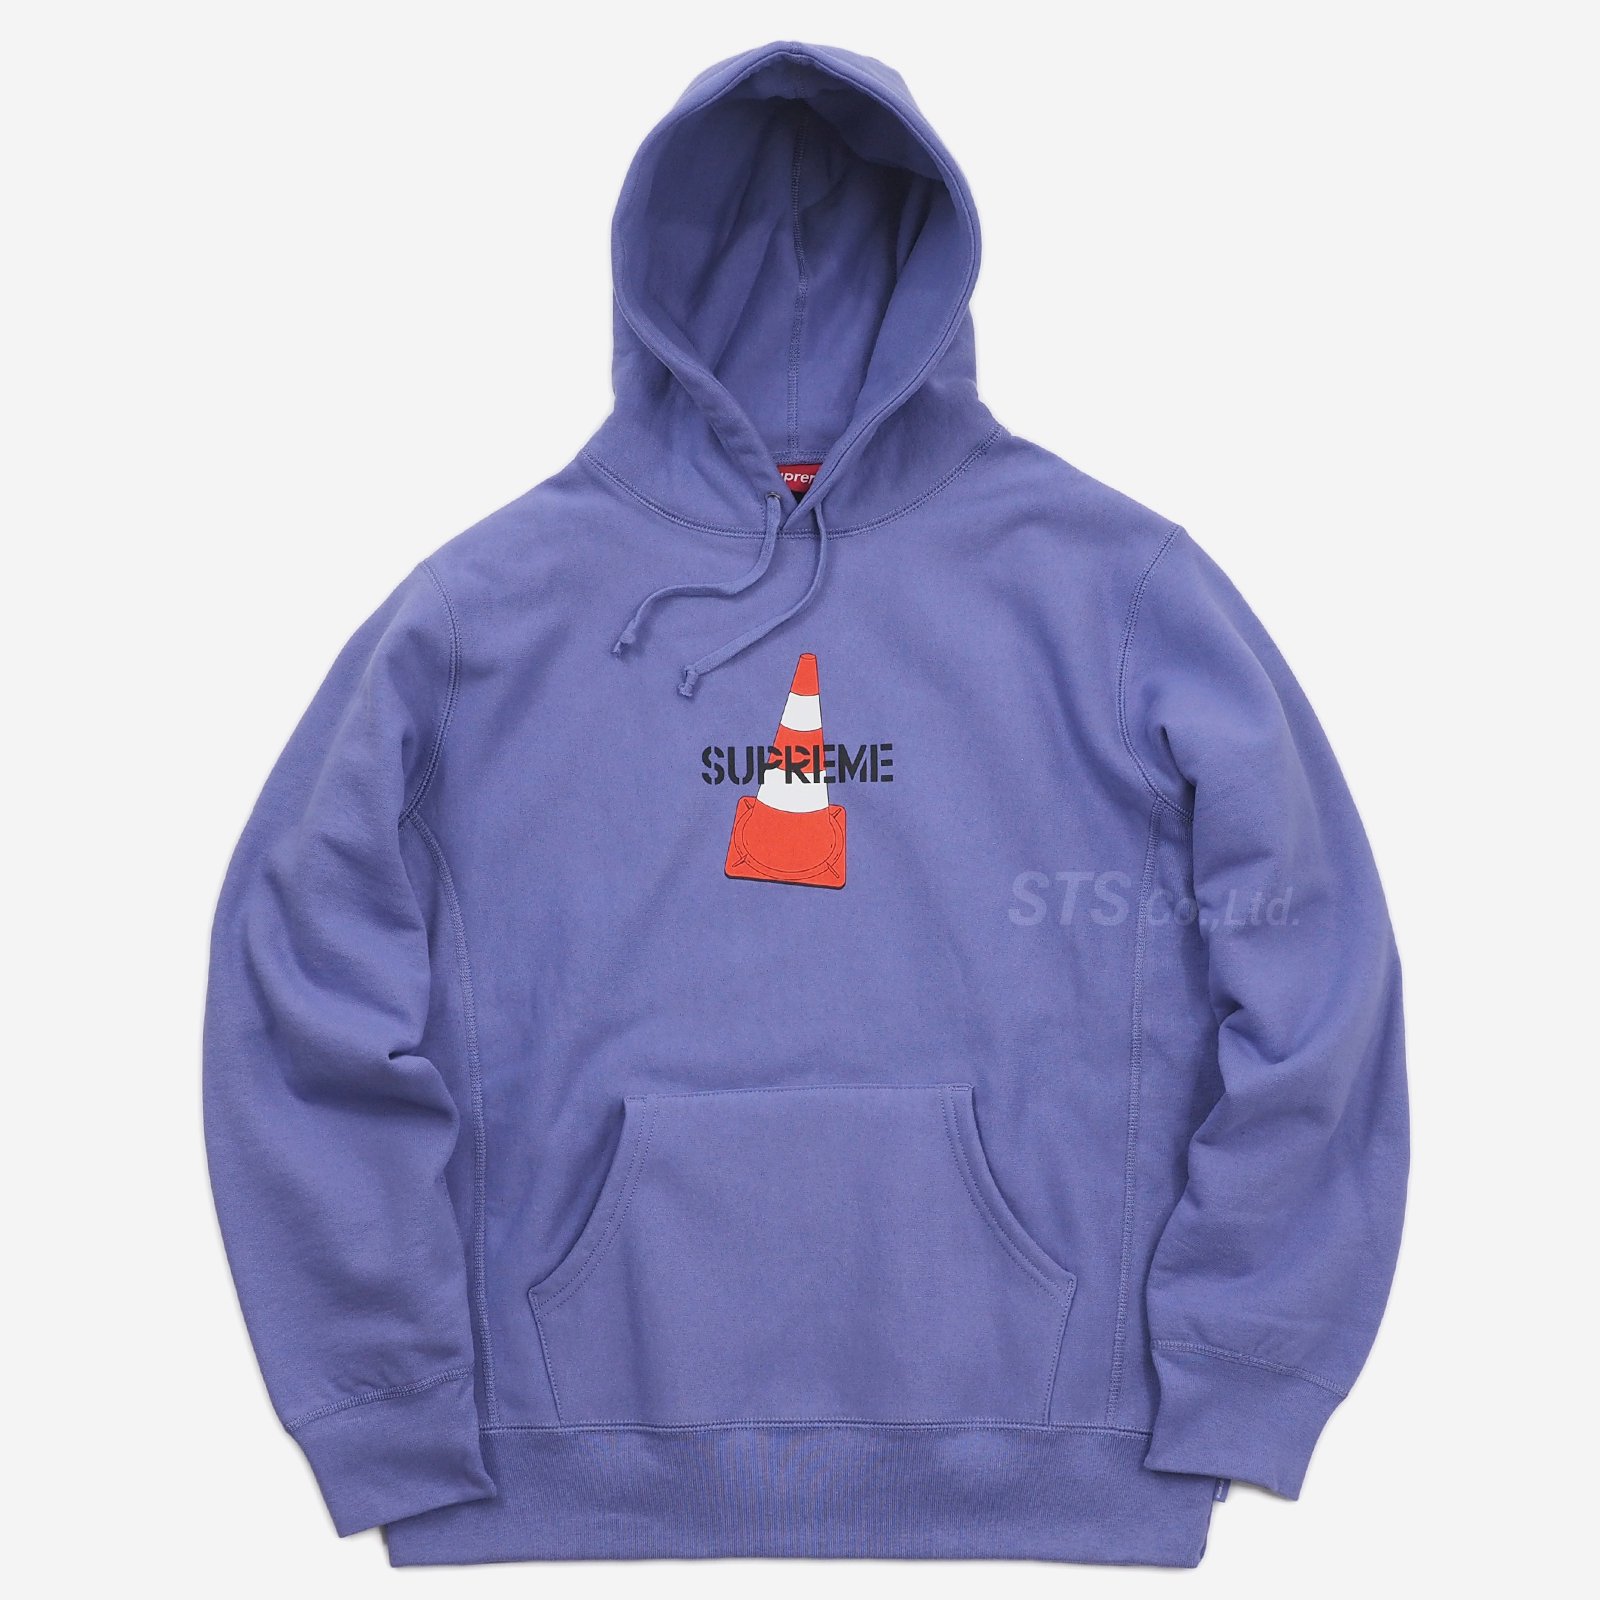 Supreme - Cone Hooded Sweatshirt - UG.SHAFT